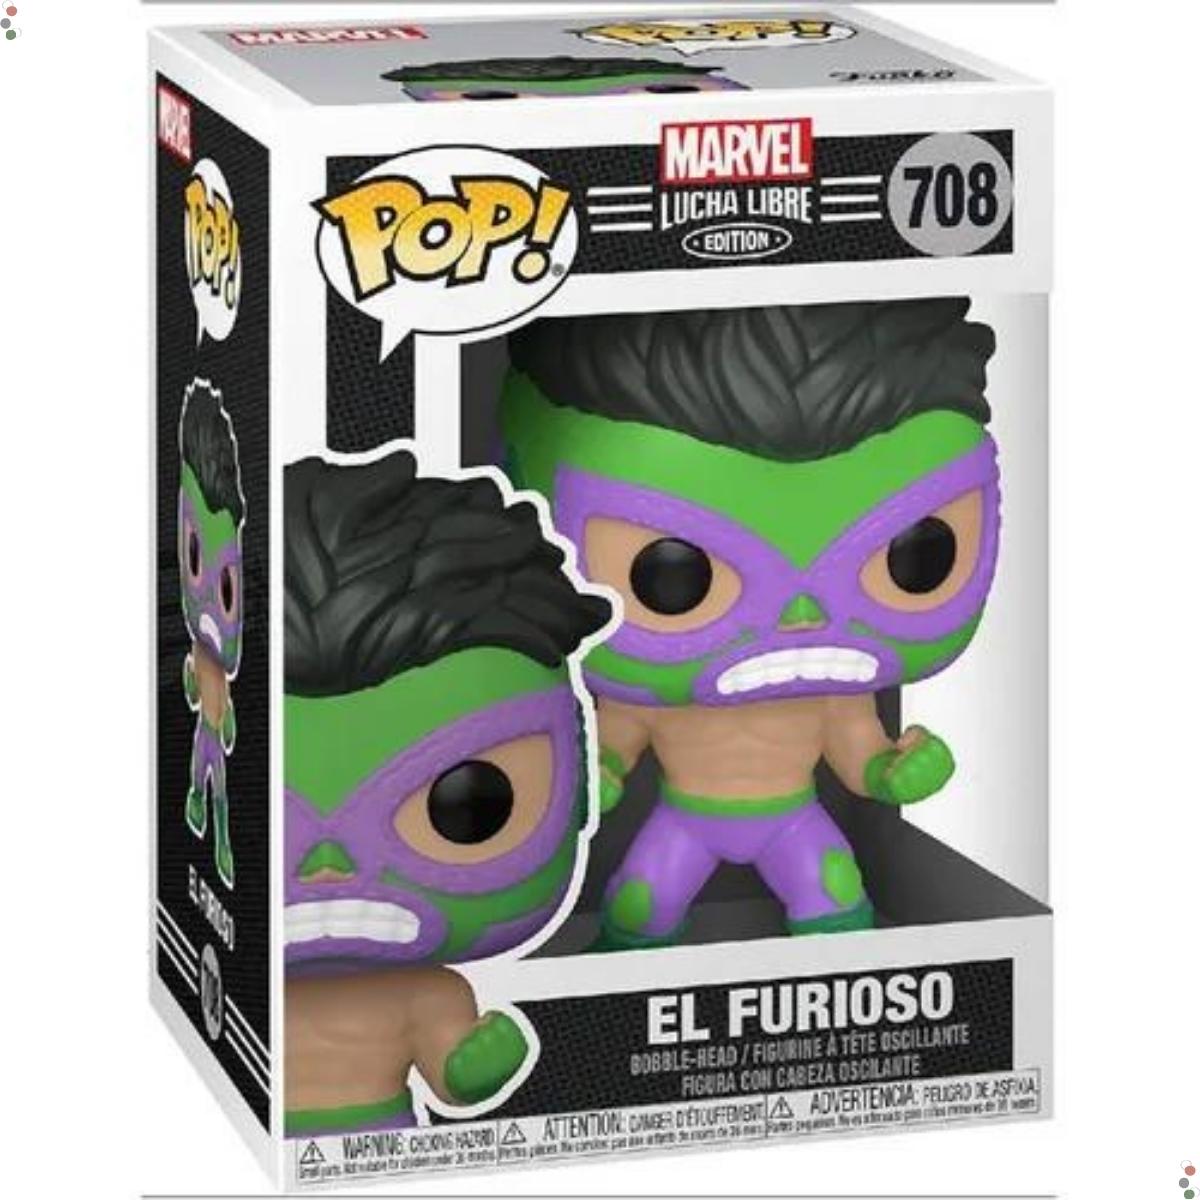 Funko Pop! Marvel: Lucha - Hulk - El Furioso - 708 - Grupo Solmaior